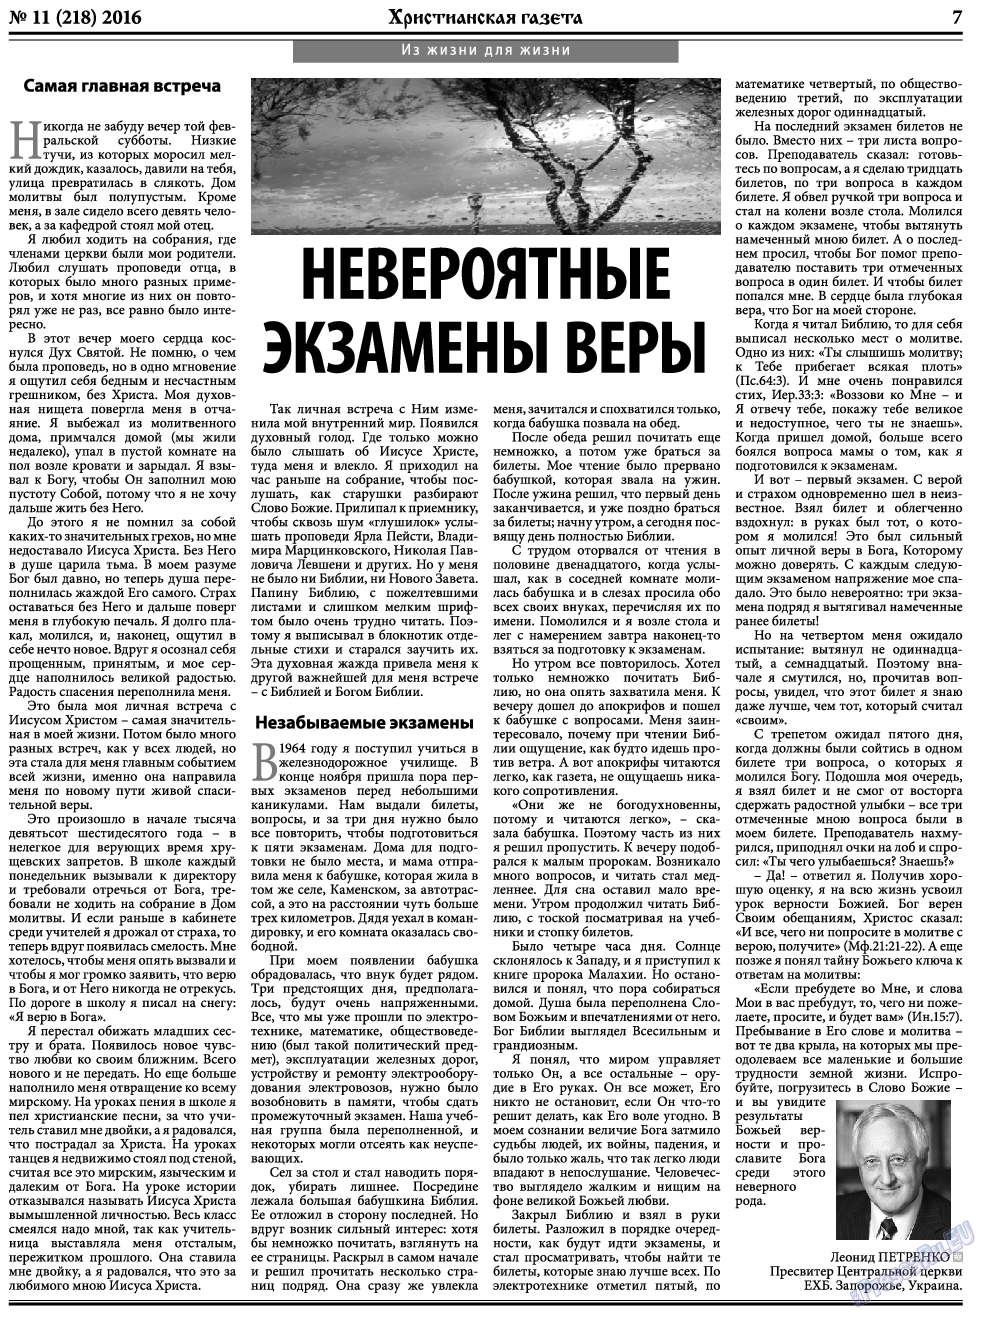 Христианская газета, газета. 2016 №11 стр.7